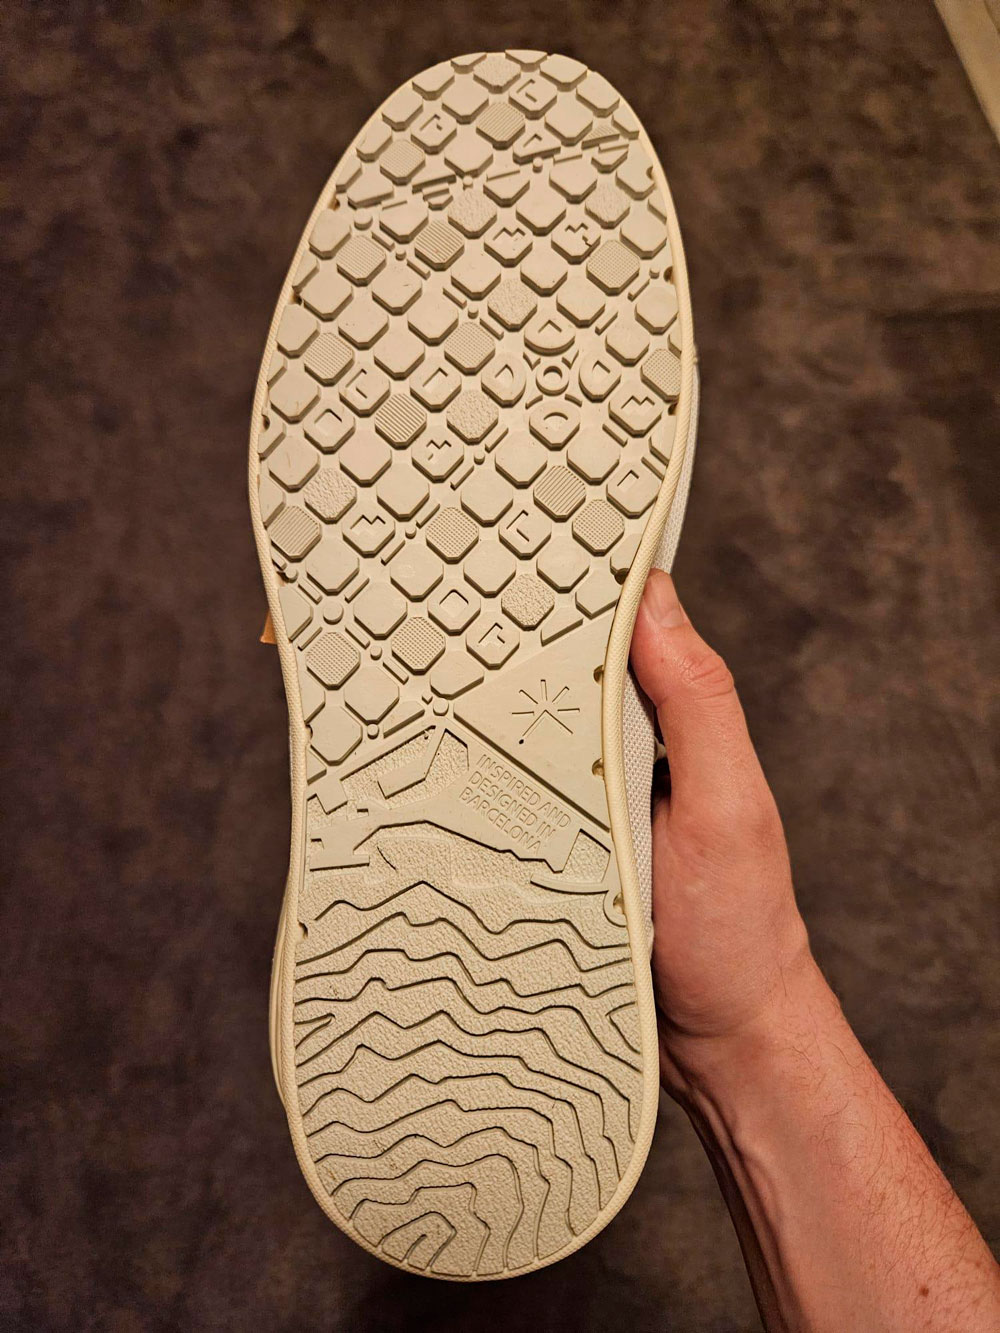 Una startup de Barcelona vende unas zapatillas con esta original suela.